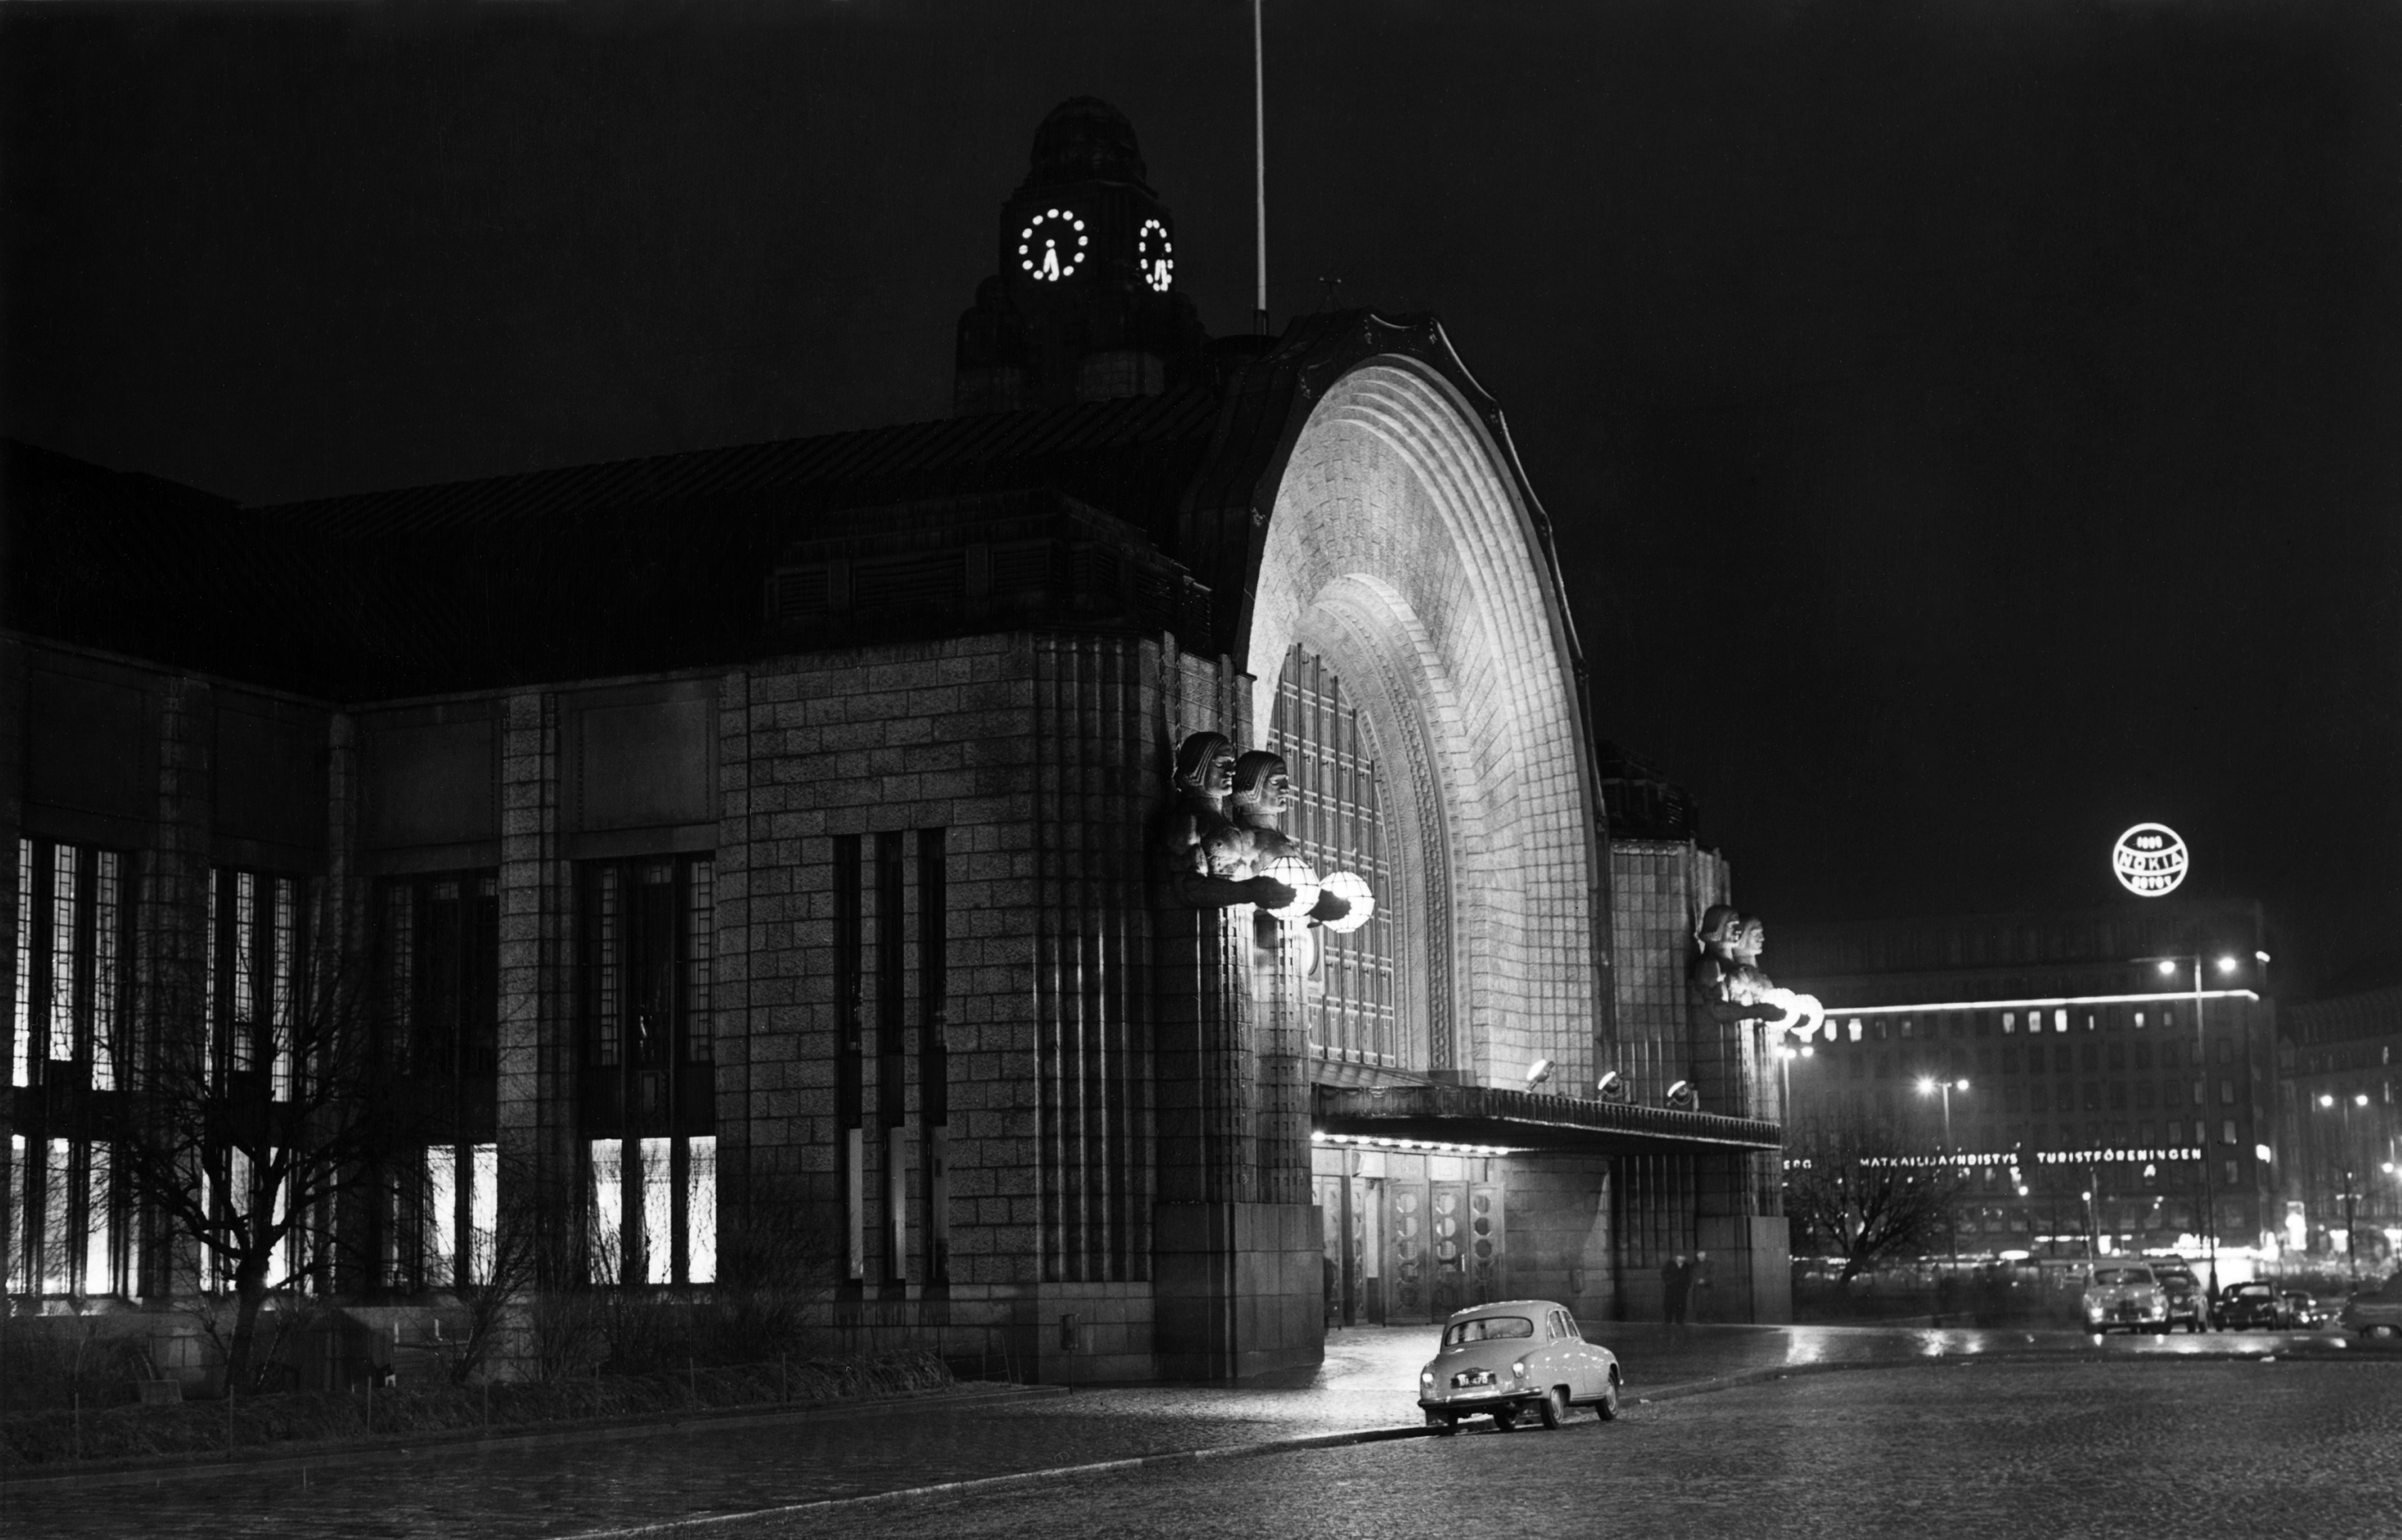 Helsingin rautatieasema. Kaivokadun puoleinen sisäänkäynti yöllä.